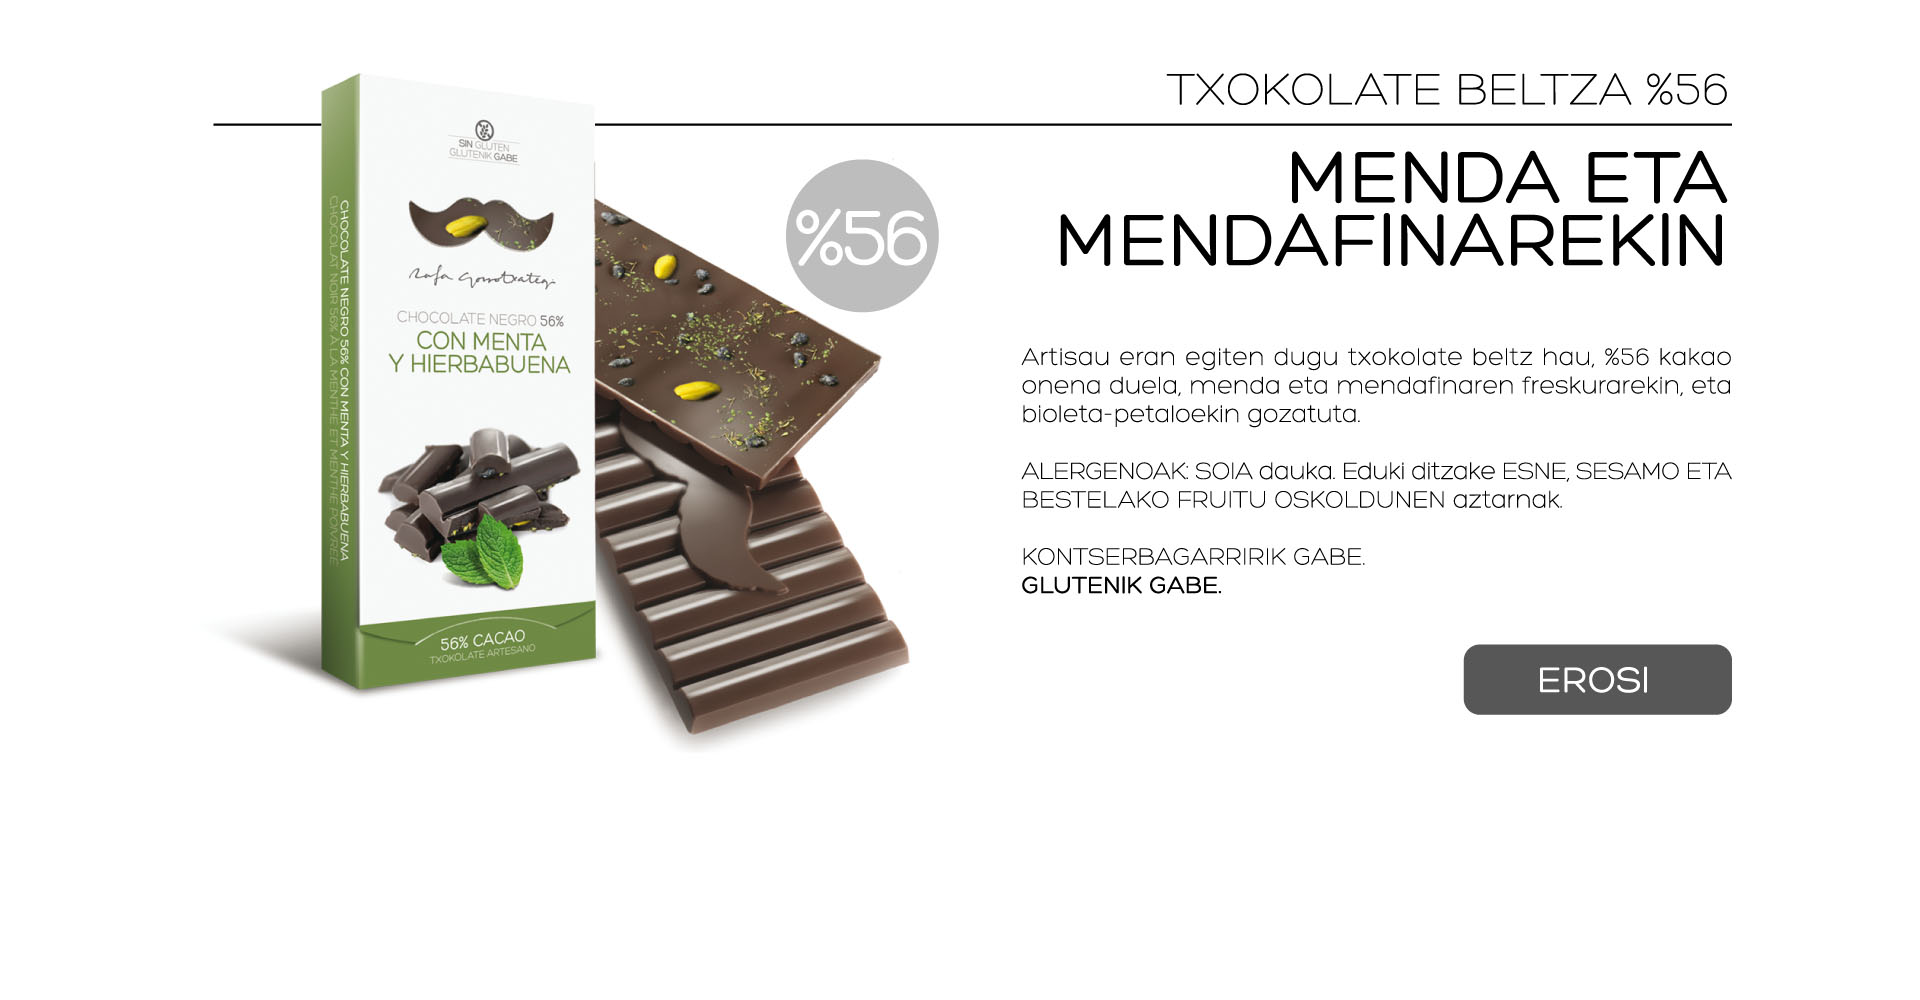 Elaboramos artesanalmente este chocolate negro con un 56% del mejor cacao, con la mejor seleccin de hierbabuena, menta fresca y aroma de menta natural, aderezado con delicados ptalos de violeta.

ALRGENOS: Contiene SOJA. Puede contener trazas de LECHE, SSAMO y OTROS FRUTOS DE CSCARA.
 
SIN CONSERVANTES.
SIN GLUTEN. 